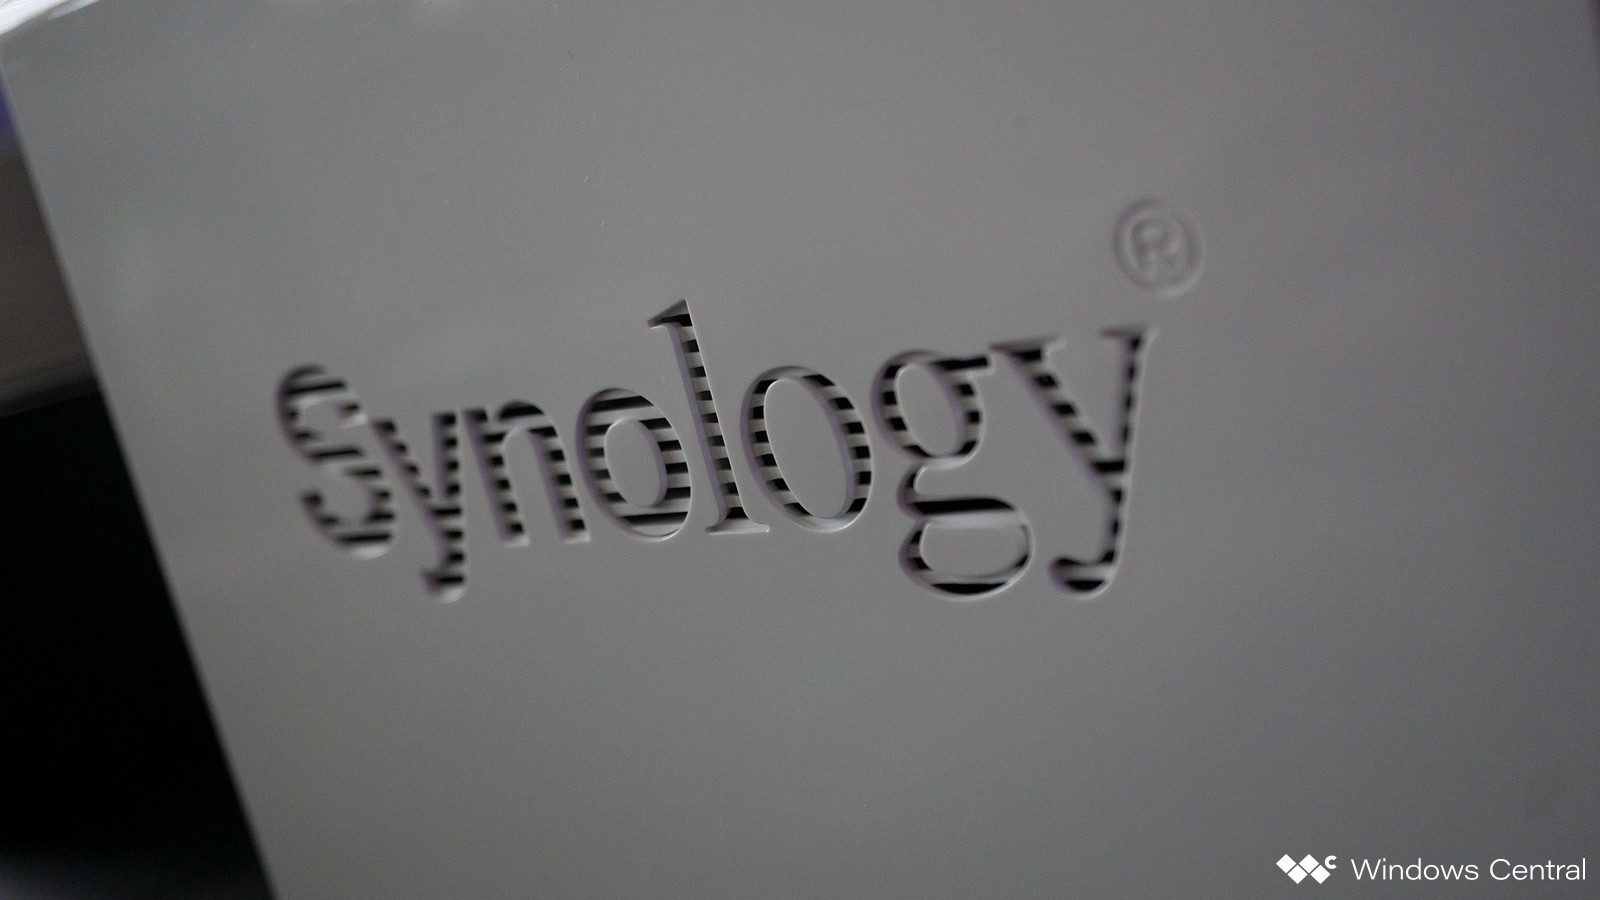 Synology Ds119j - Porsche , HD Wallpaper & Backgrounds